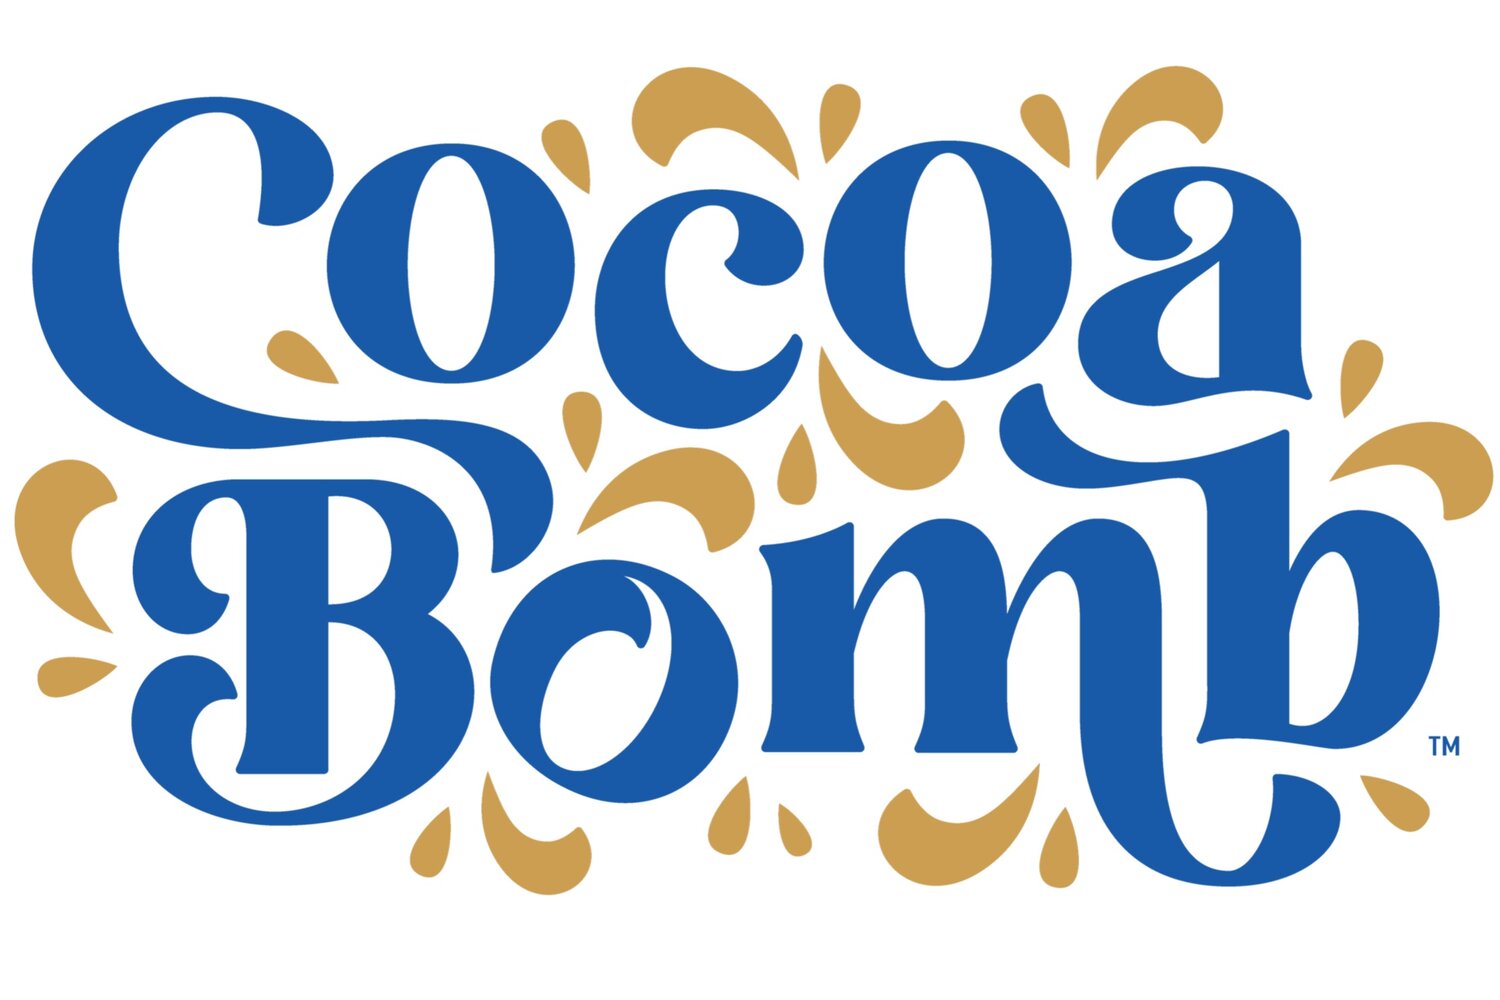 Cocoa Bomb Whiskey™